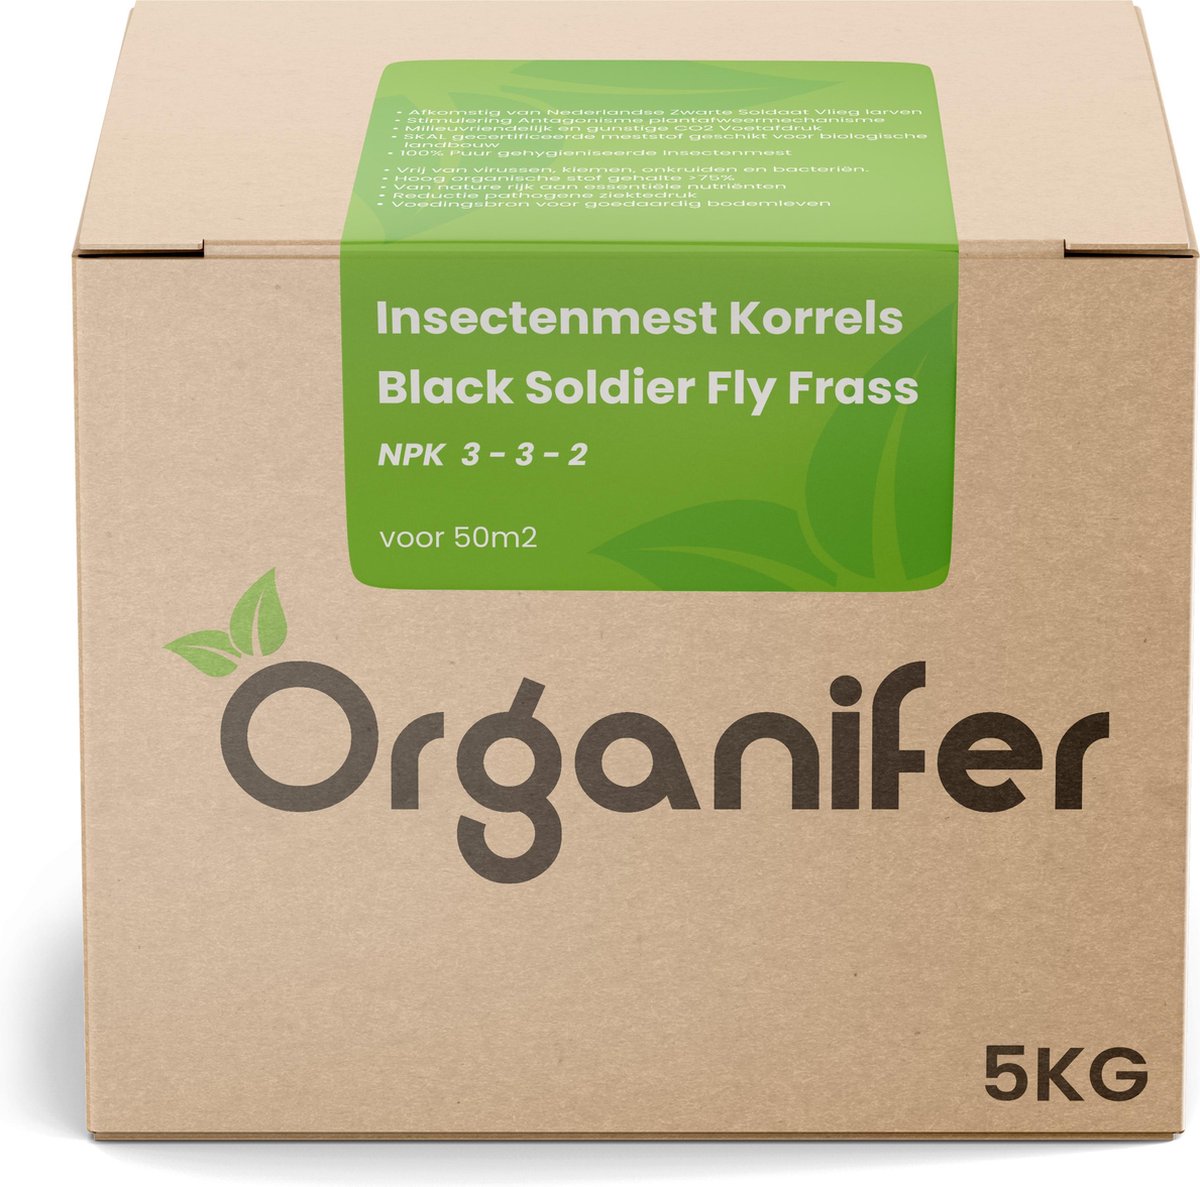 Insectenmest Korrels - Black Soldier Fly Frass - (5Kg voor 50m2) - Organifer